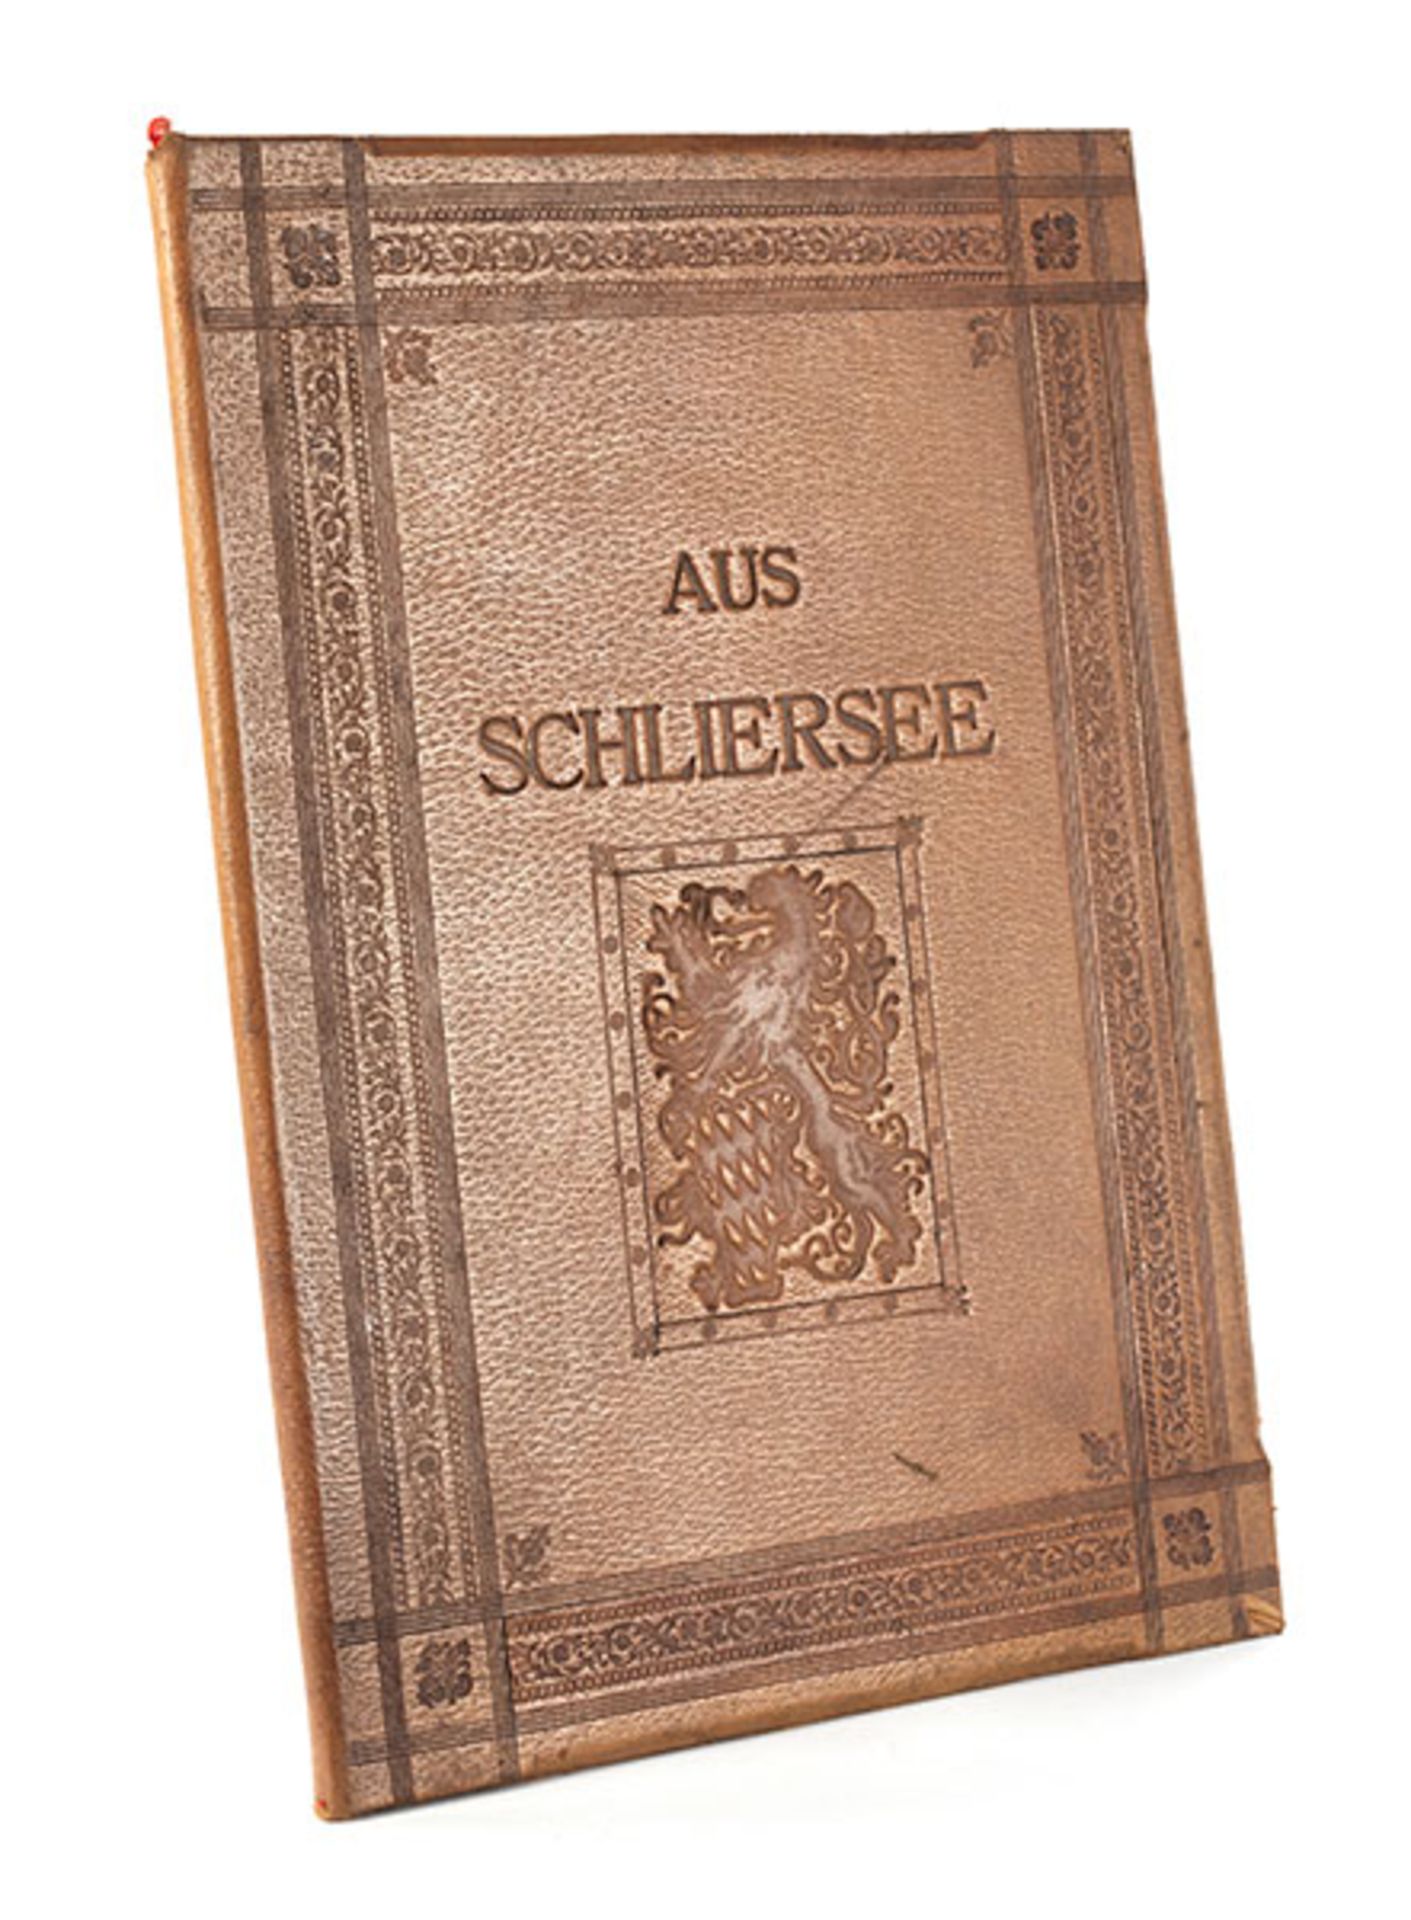 Joseph Wopfner (1843-1927) für Bismarck 46,5 x 33,5 cm. Schliersee, 1885. Prachtvolle geprägte